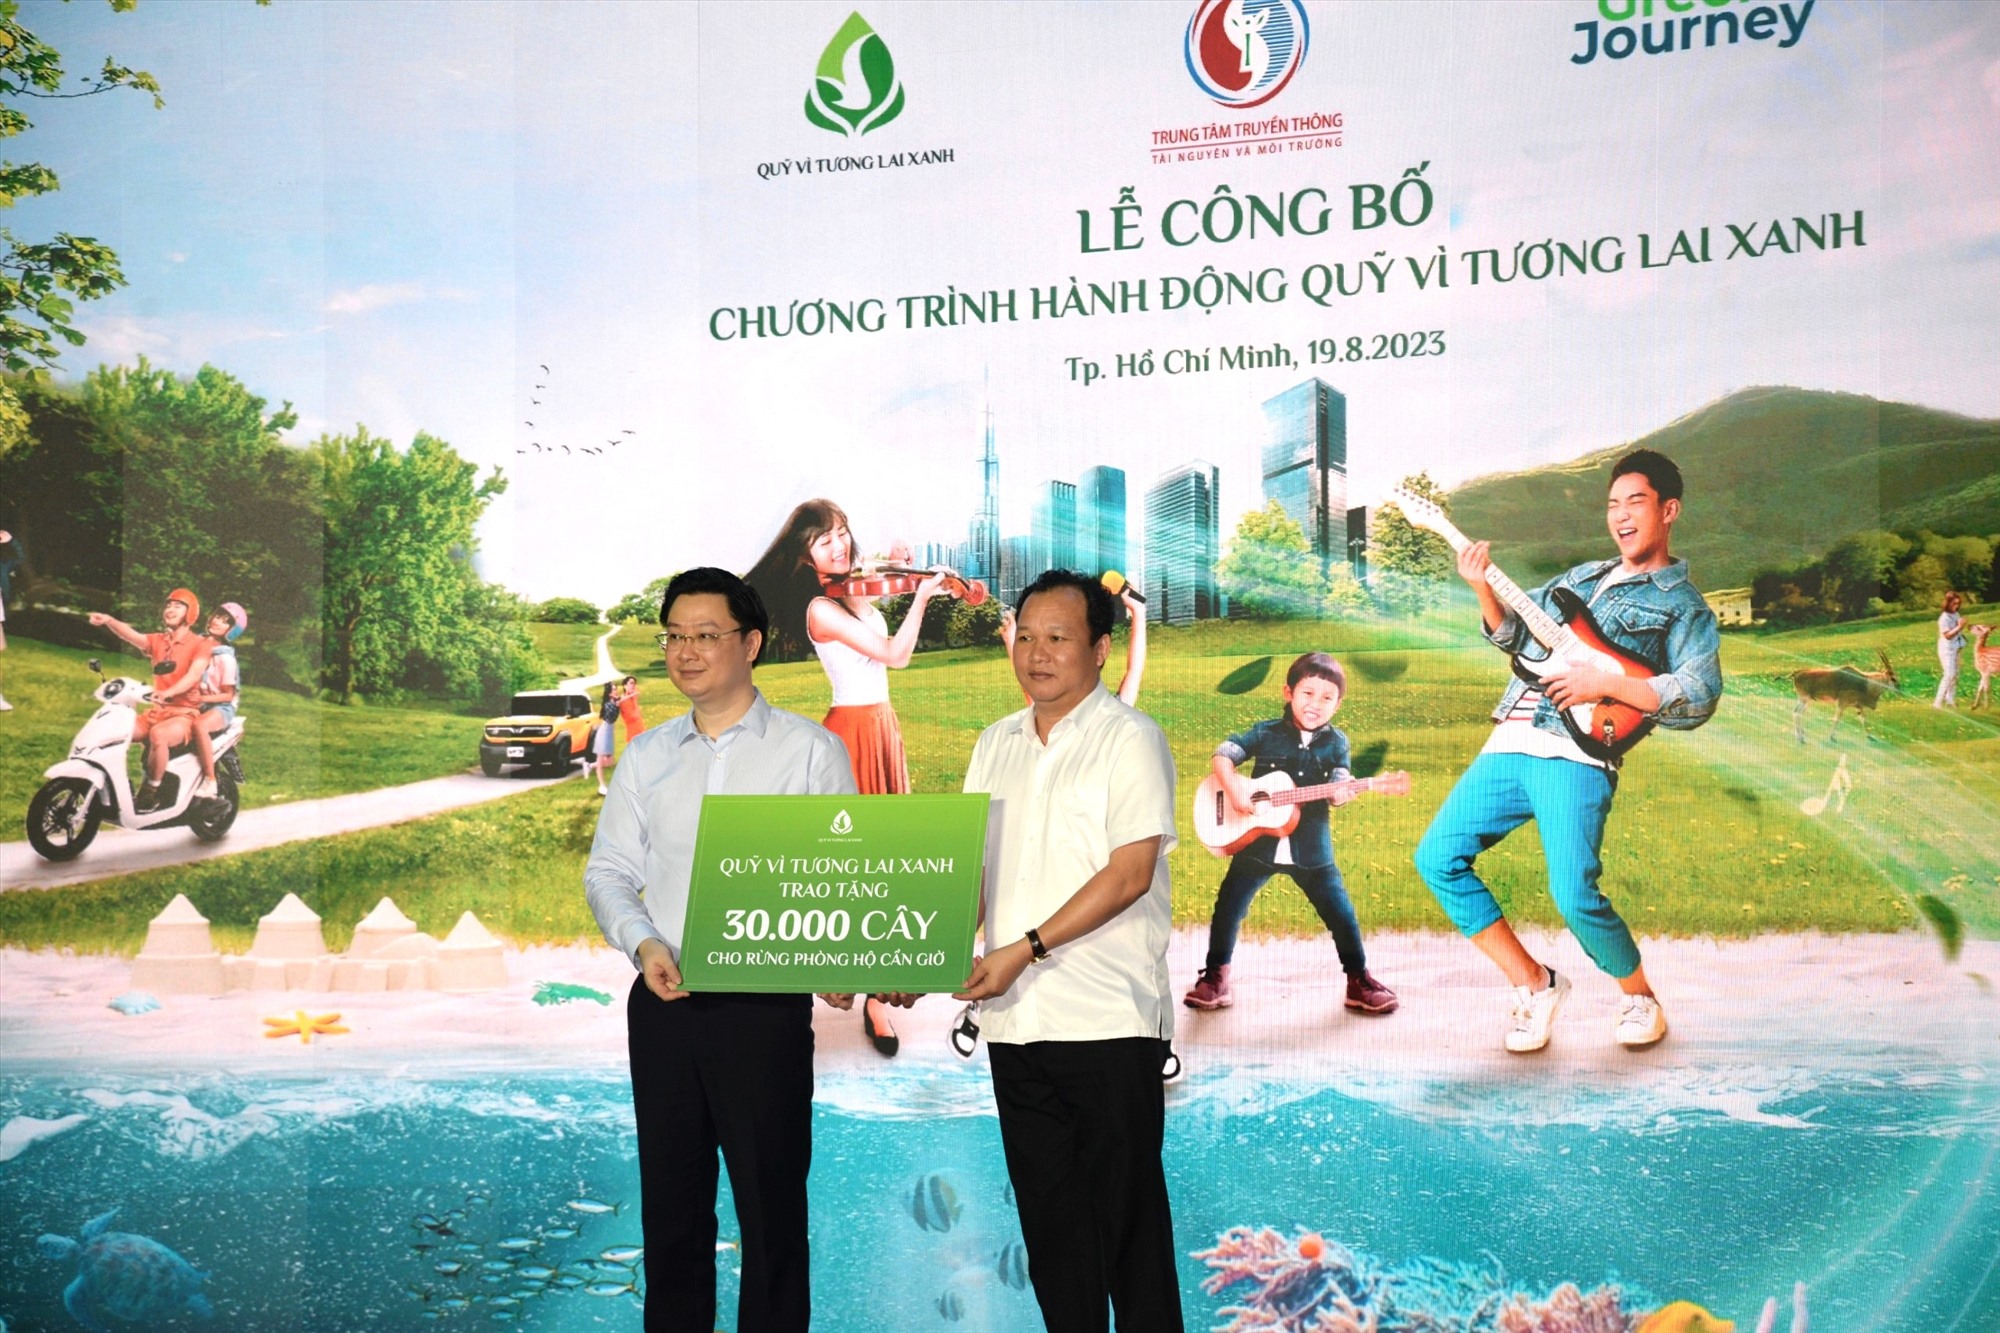 Đại diện quỹ Vì tương lai Xanh trao biển tượng trưng 30.000 cây xanh cho địa diện Ban Quản lý rừng phòng hộ Cần Giờ.  Ảnh: Minh Quân